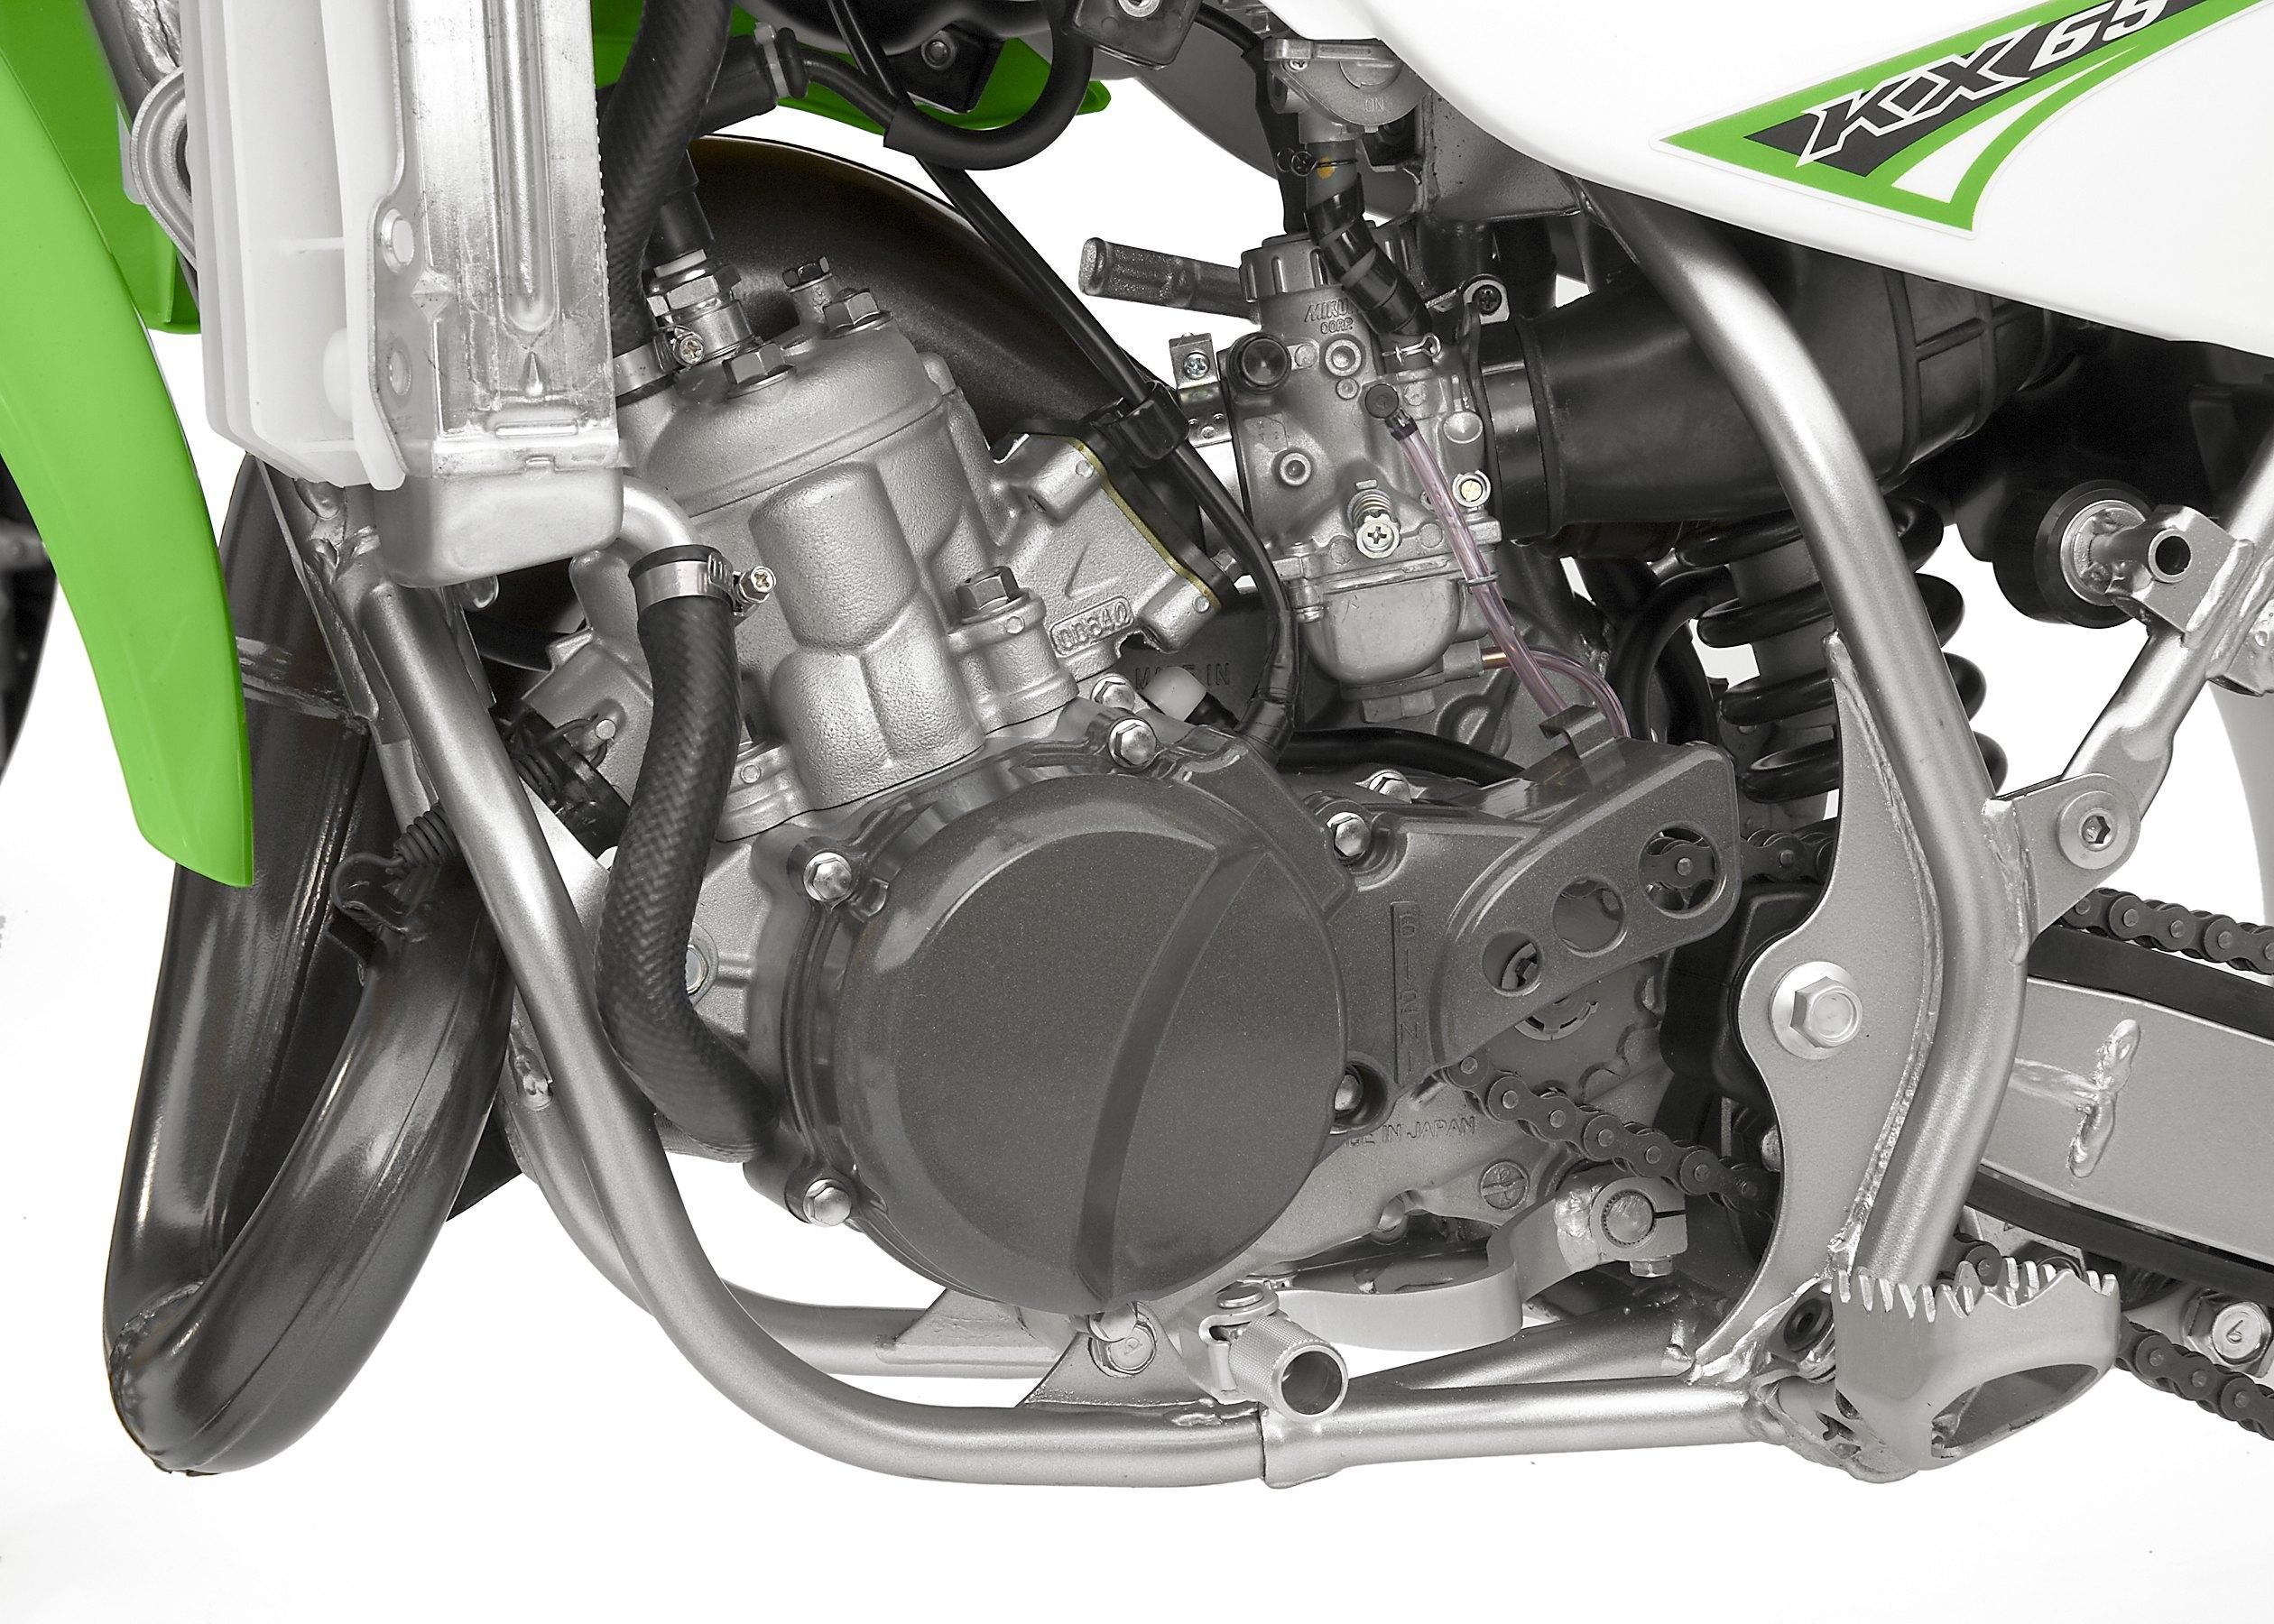  2008 Kawasaki KX65 Engine